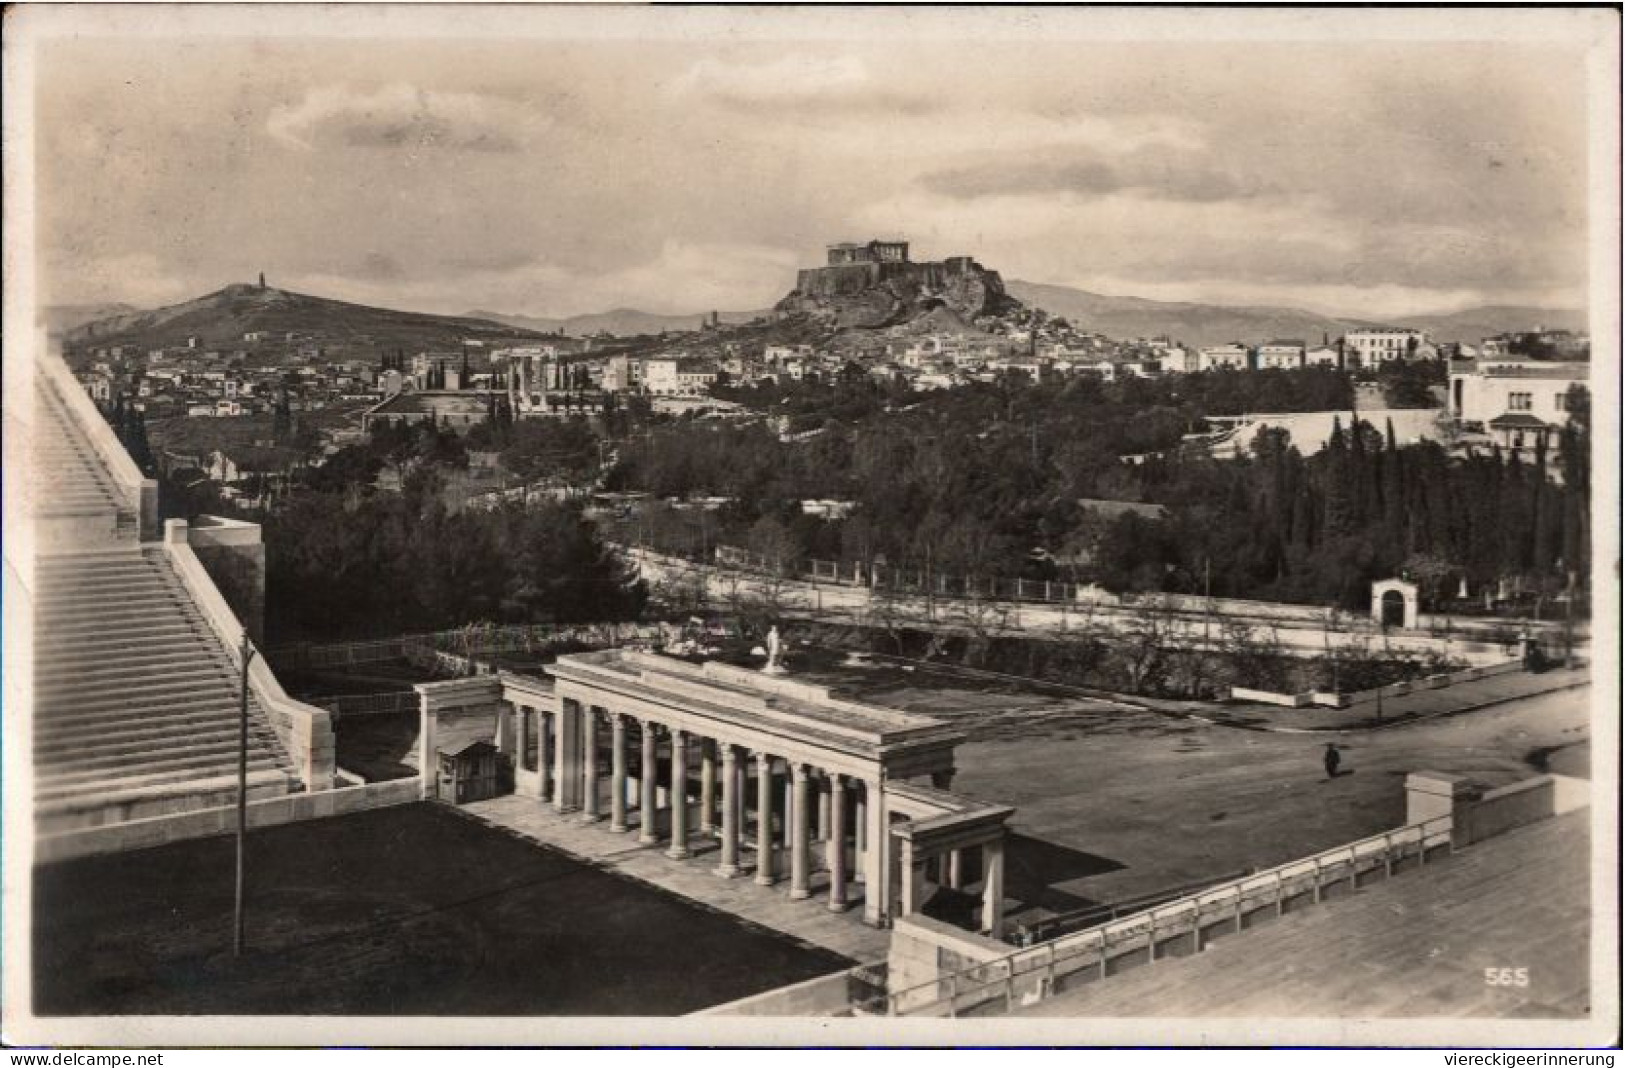 ! 1928 Ansichtskarte, Athen, Stadion, Stadium, Griechenland, Greece - Stades